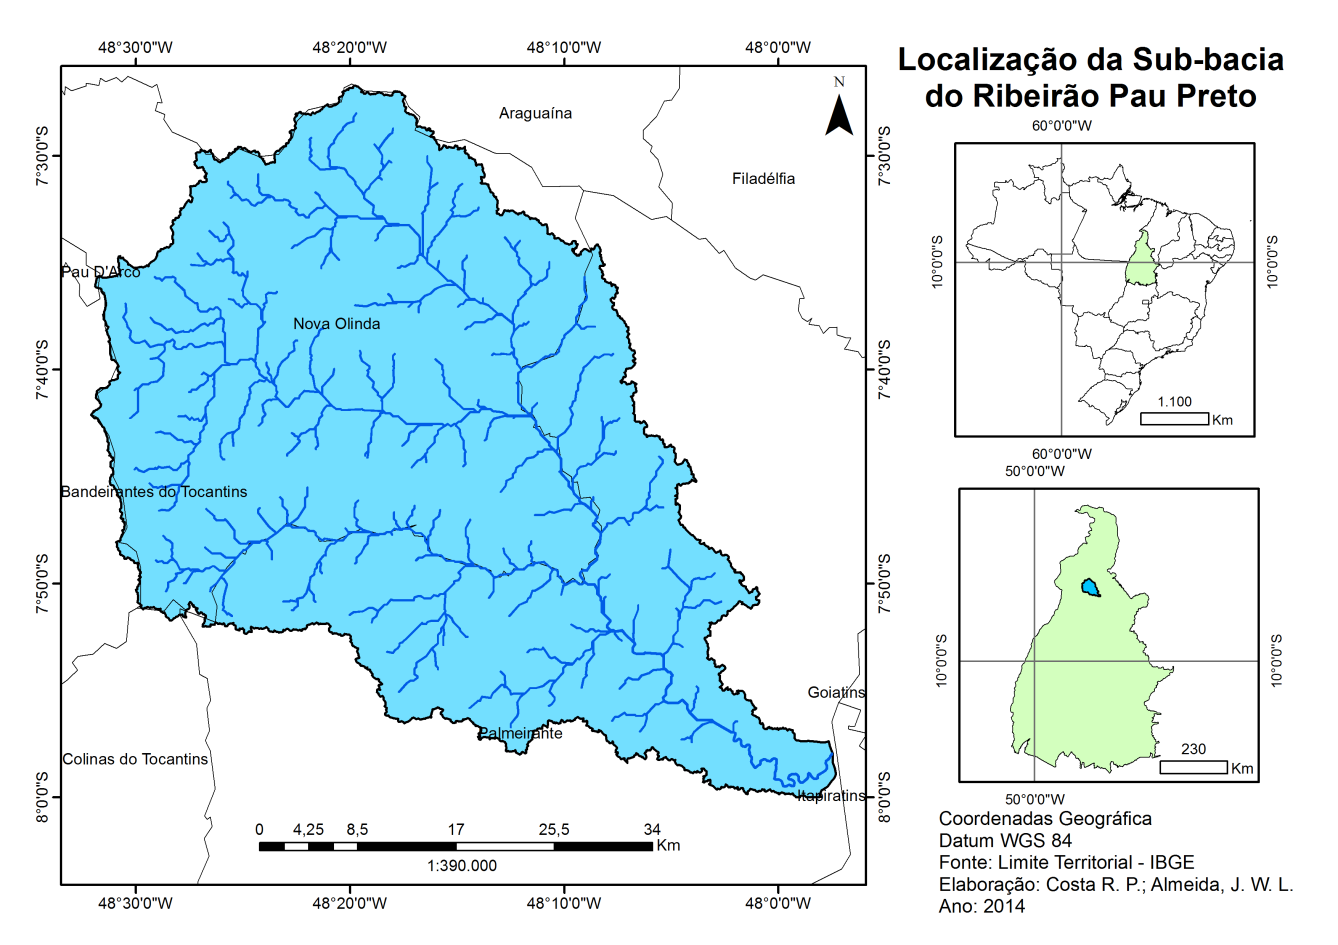 Fig. 1 - Localização da Sub-bacia do Ribeirão Pau Preto. 3.